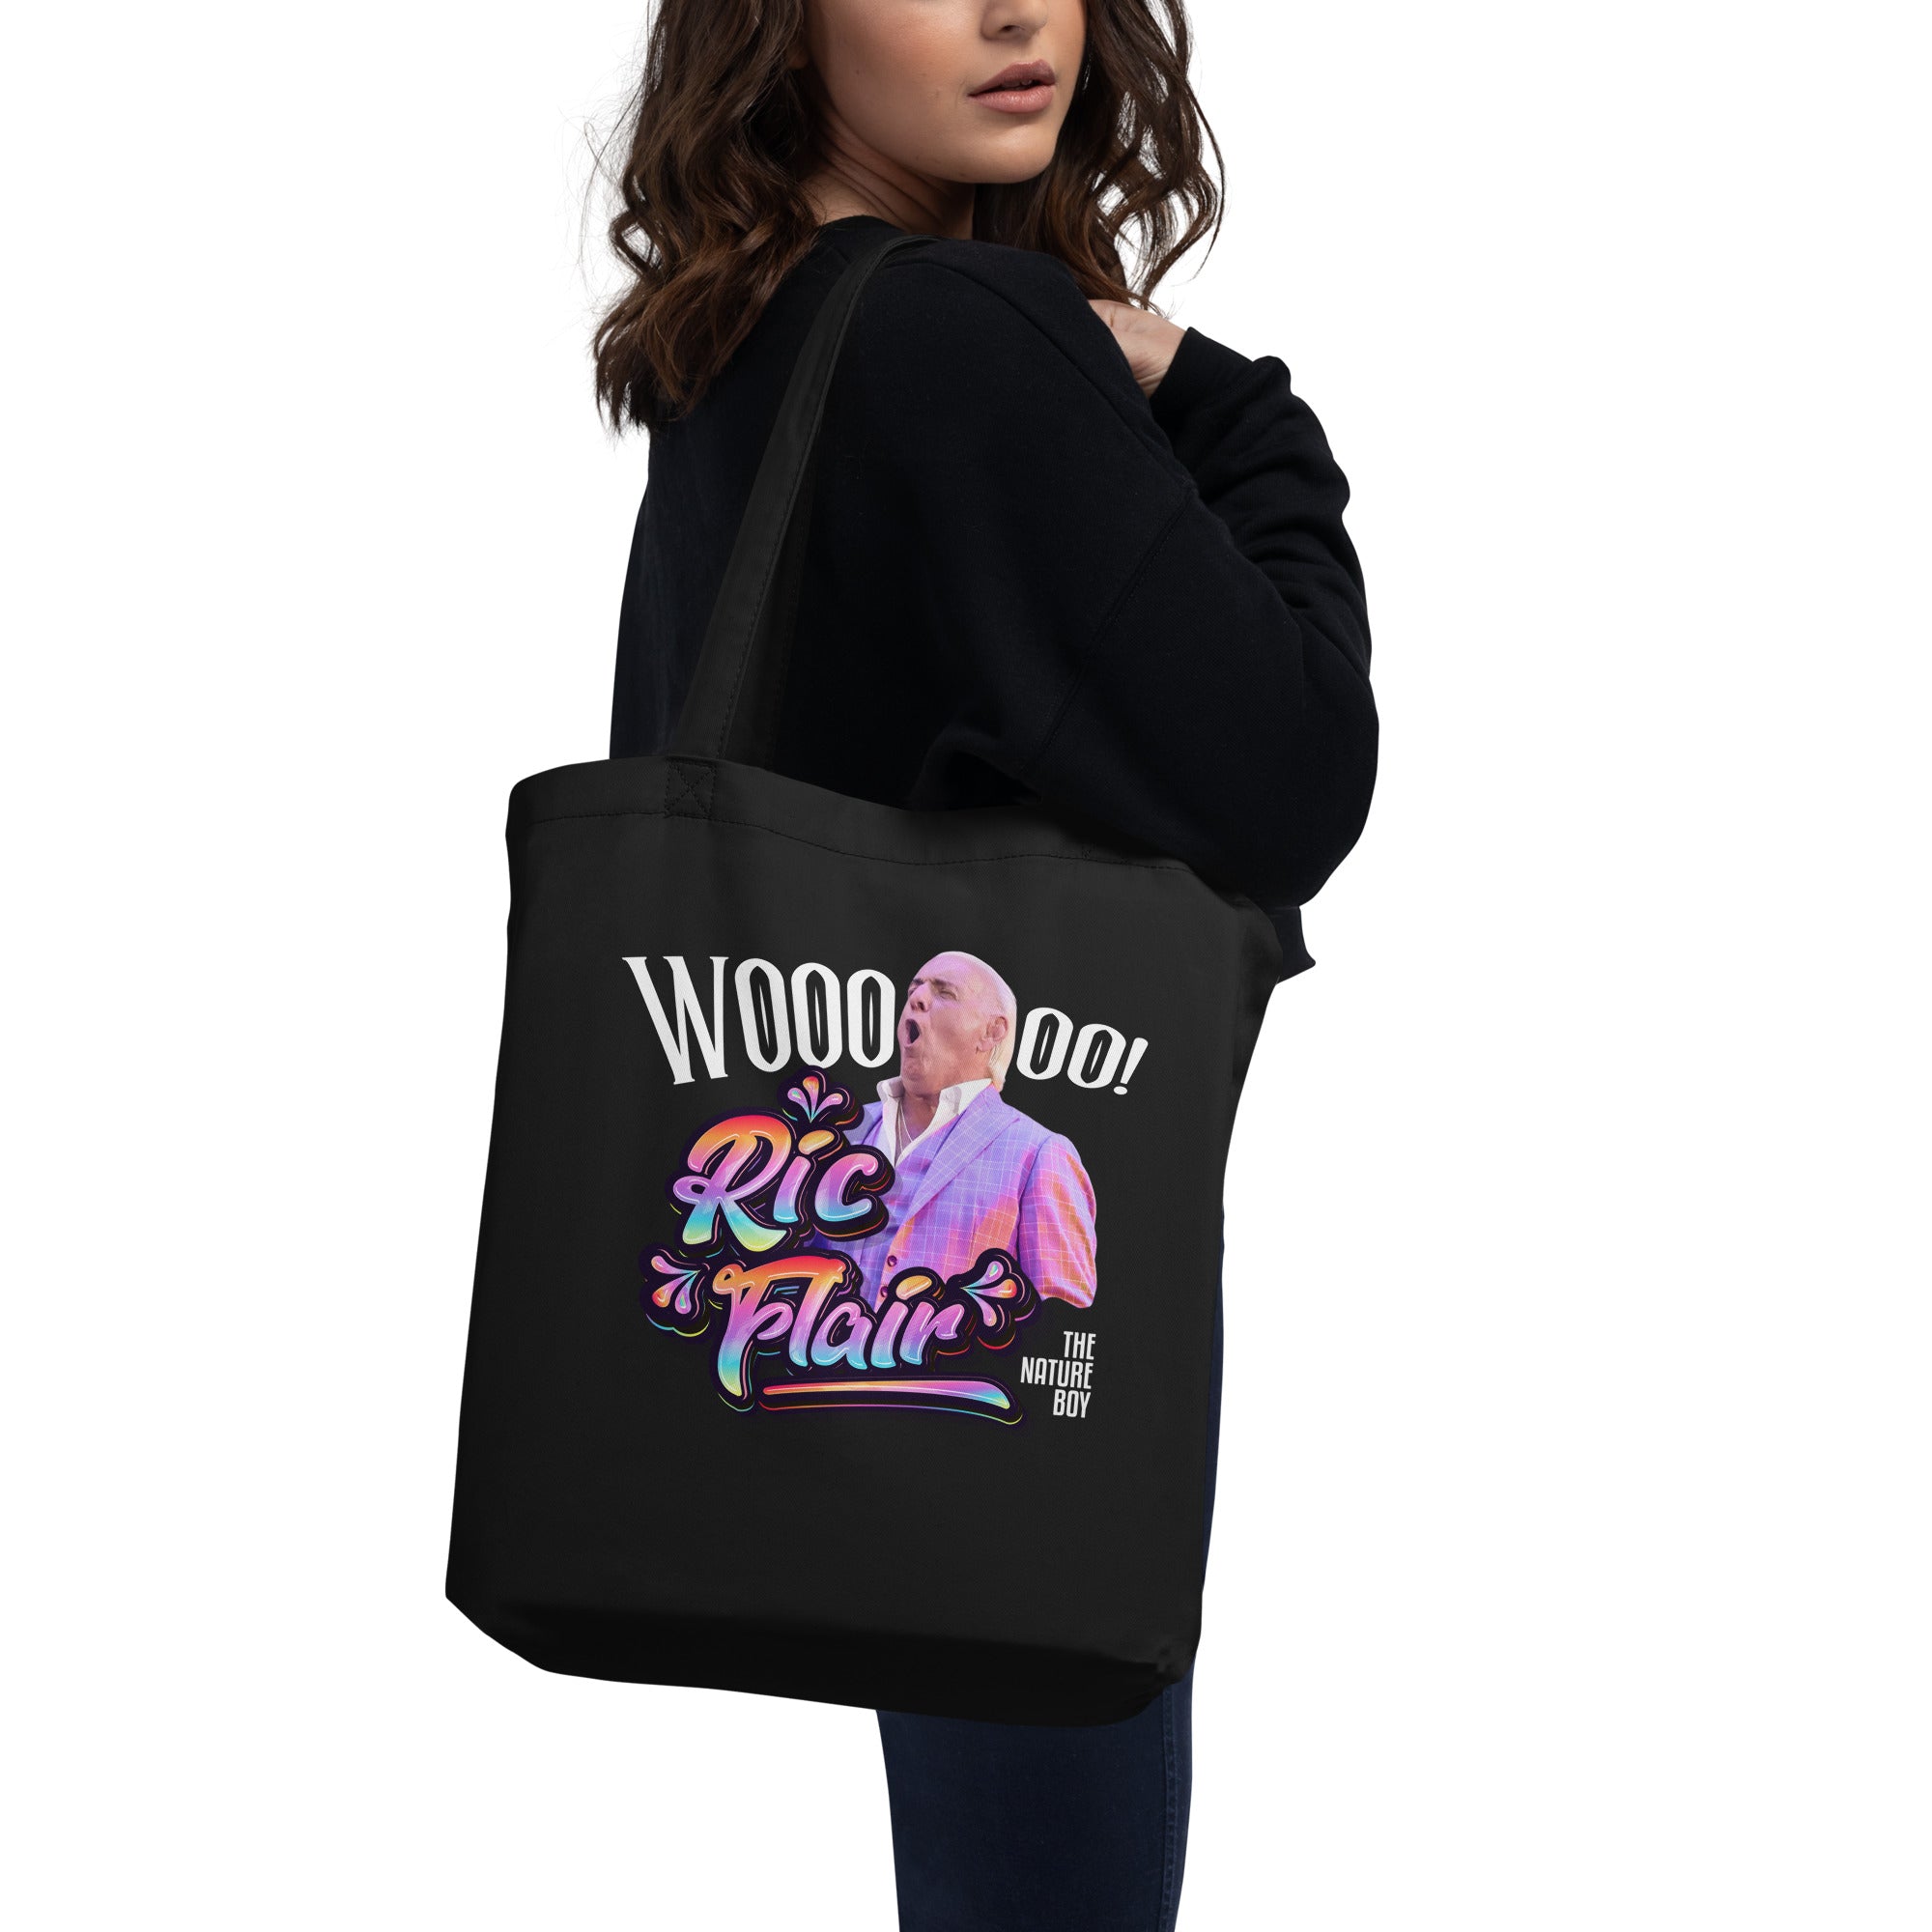 Ric Flair Eco Tote Bag